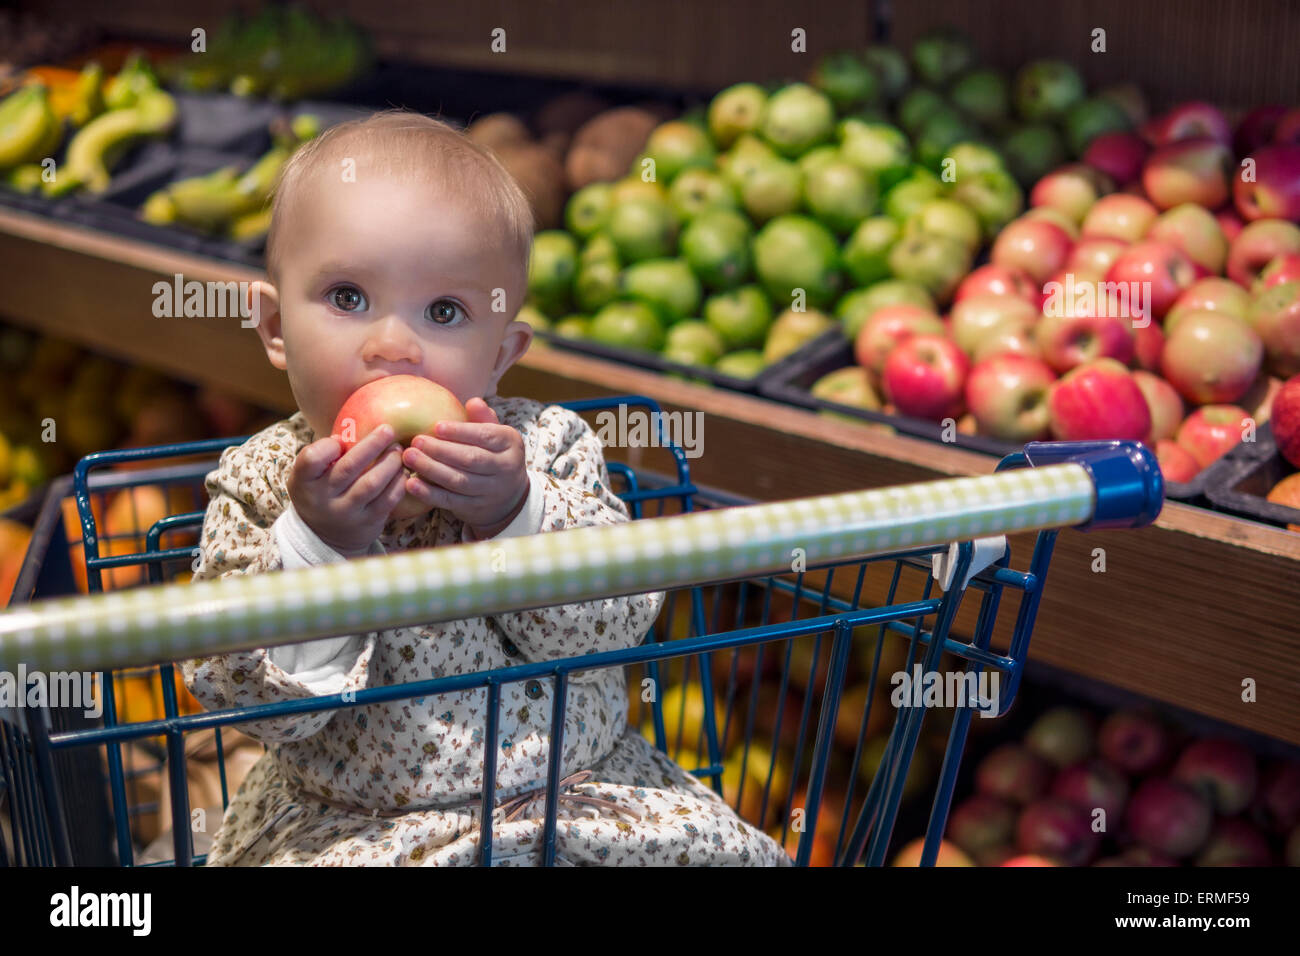 Niedliche Baby in einem Einkaufswagen einen Apfel essen Stockfoto